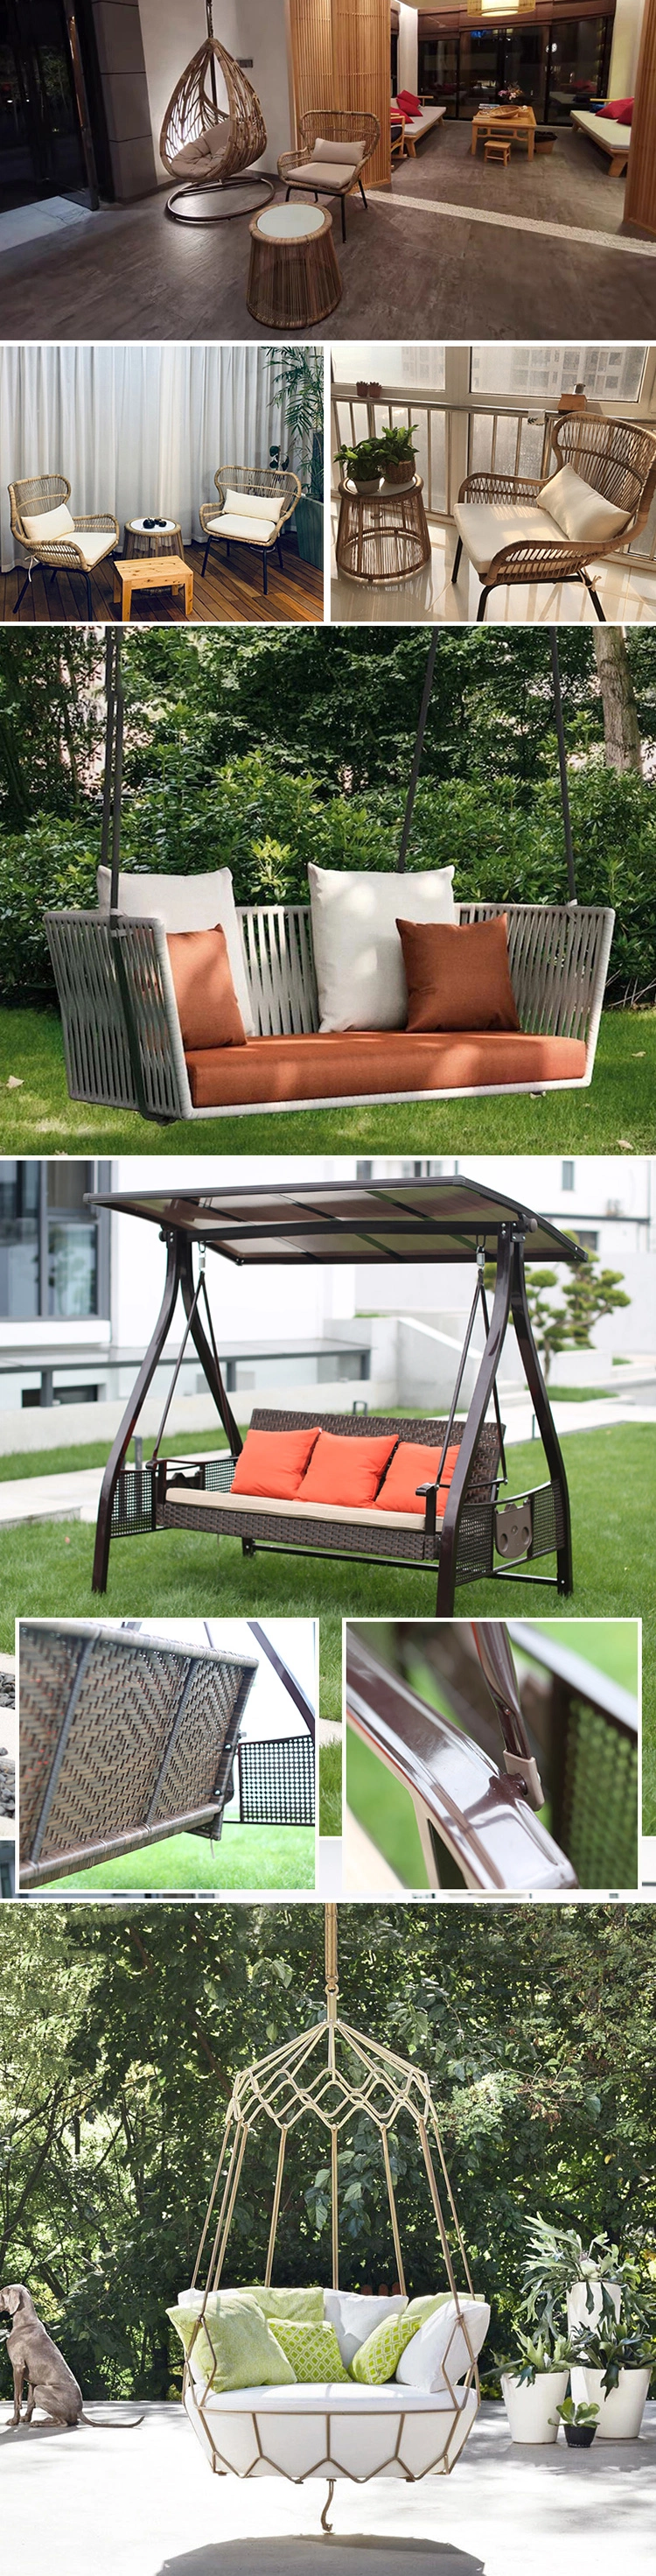 Cheap Price Outdoor Furniture Rope Weaving Hanging Swing Chair Indoor Patio Garden Swing